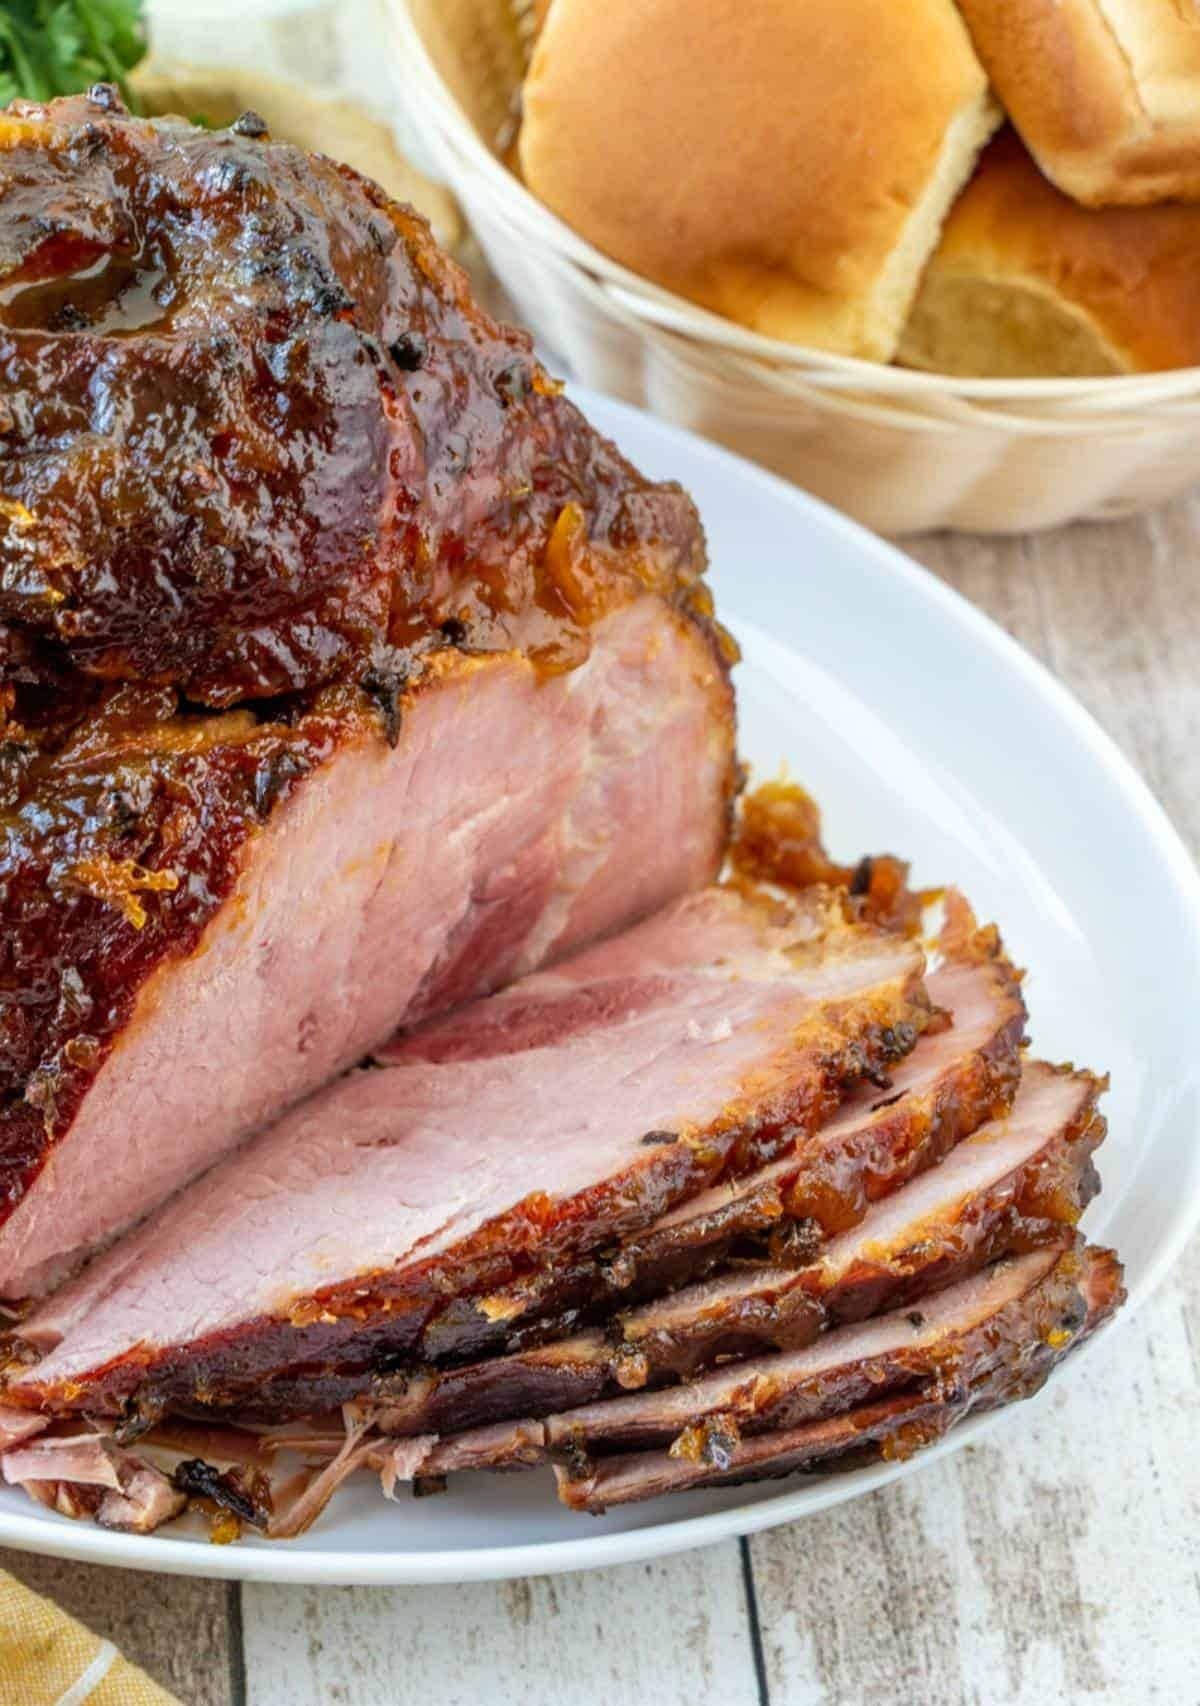 Sliced whole glazed ham on a plate.